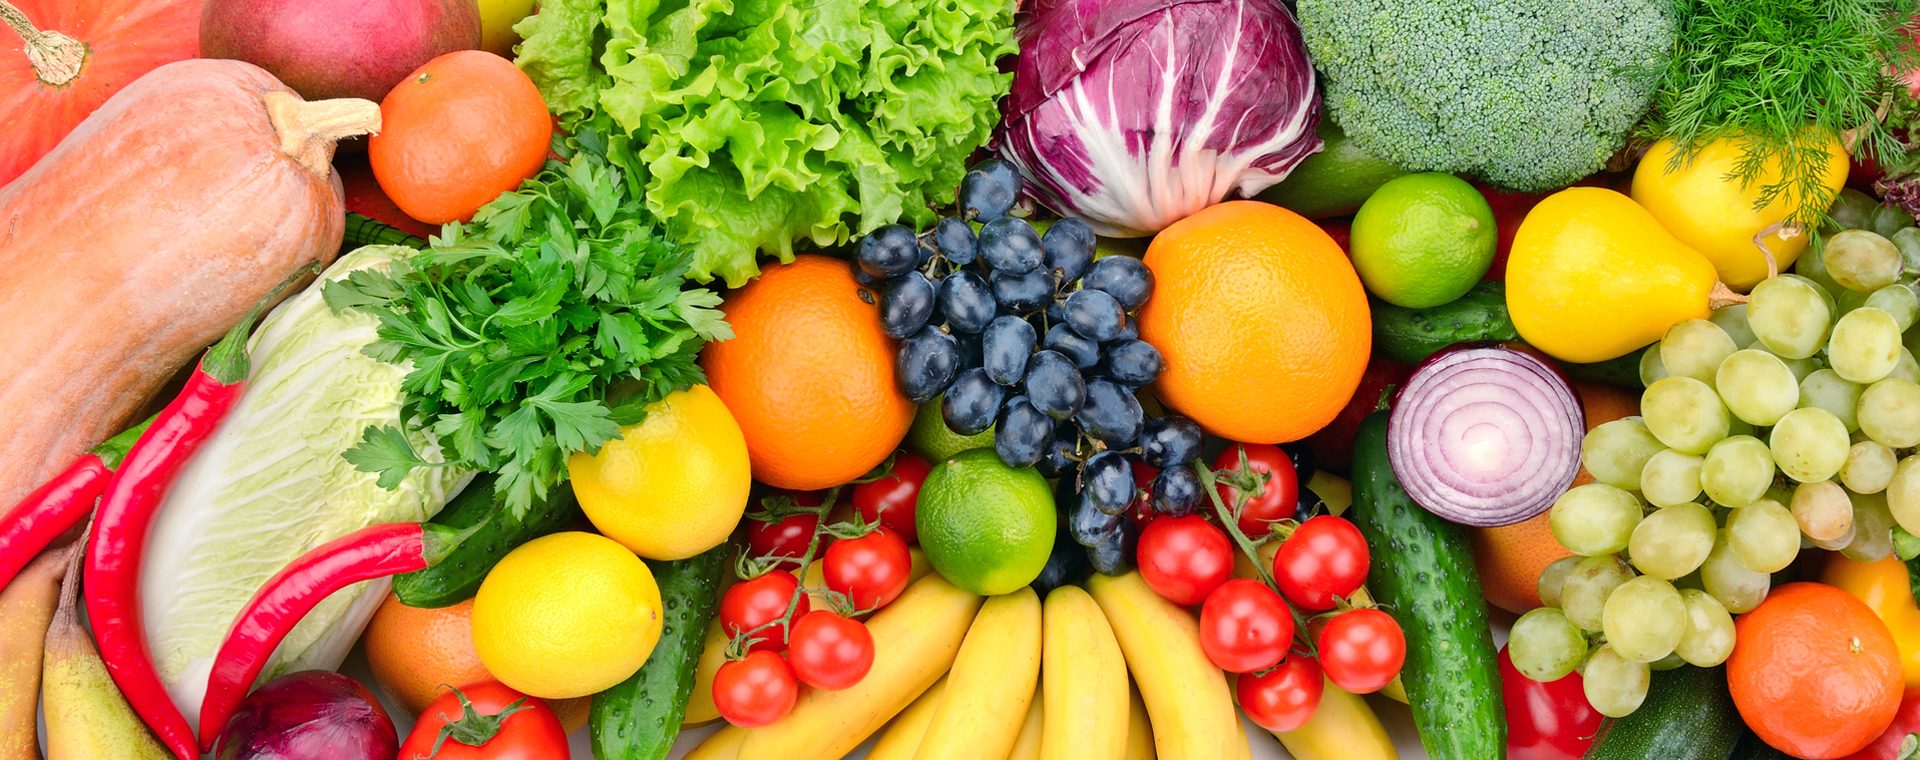 Inhaltsstoffe in Obst und Gemüse